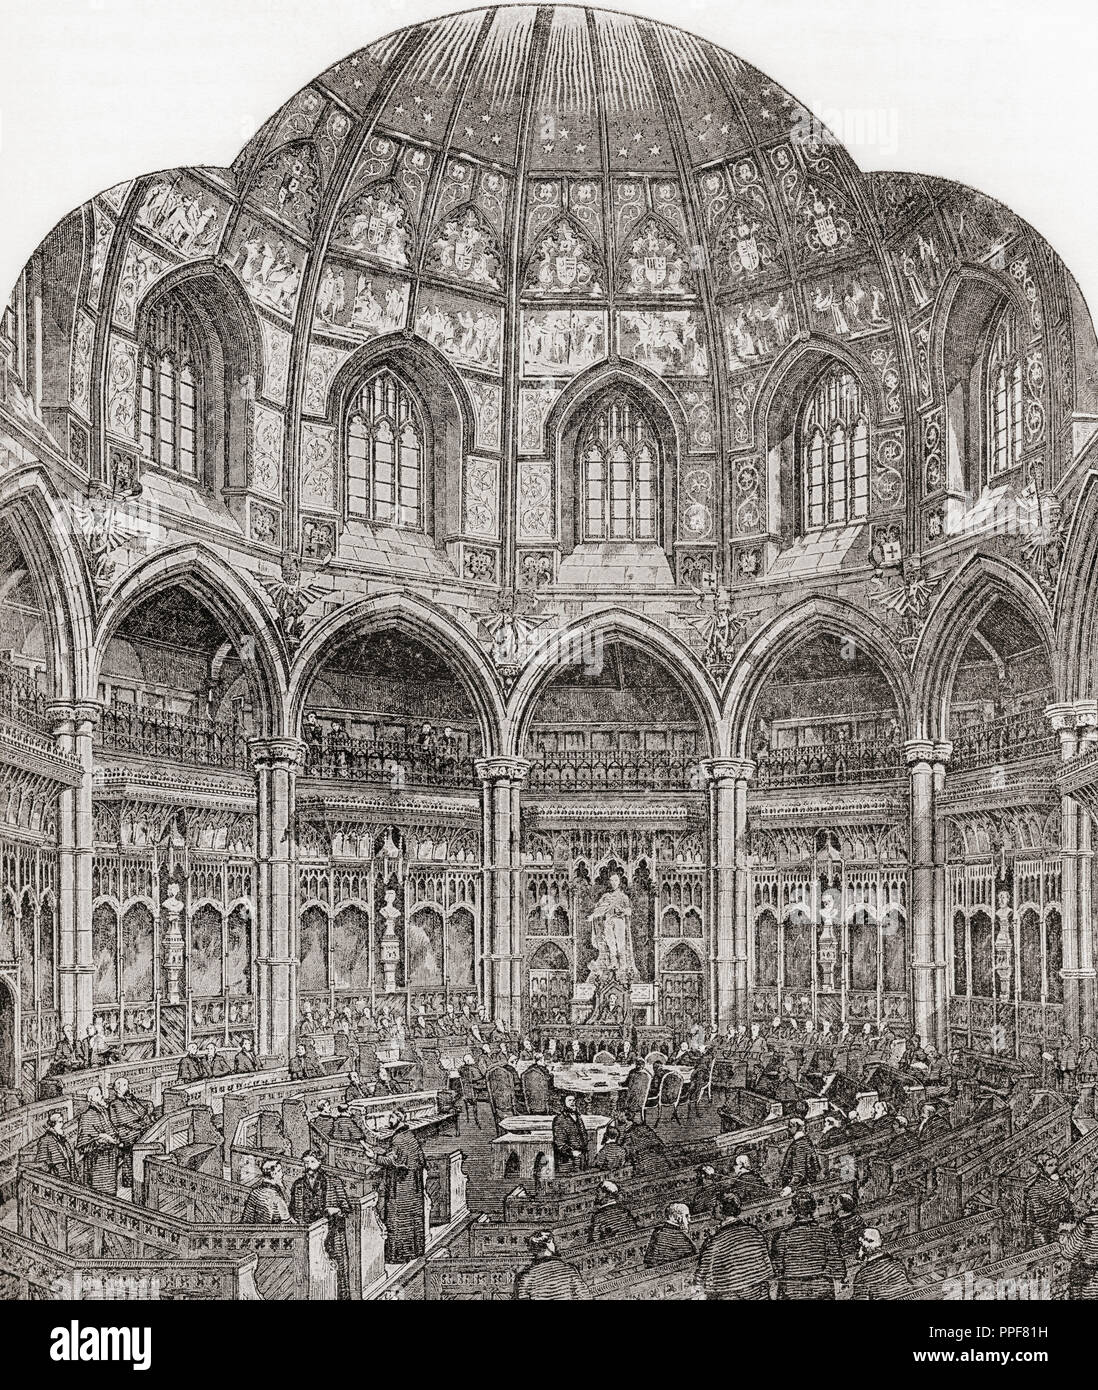 Il nuovo Consiglio comune camera, Guildhall di Londra, Inghilterra nel XIX secolo. Da Londra Foto, pubblicato 1890. Foto Stock